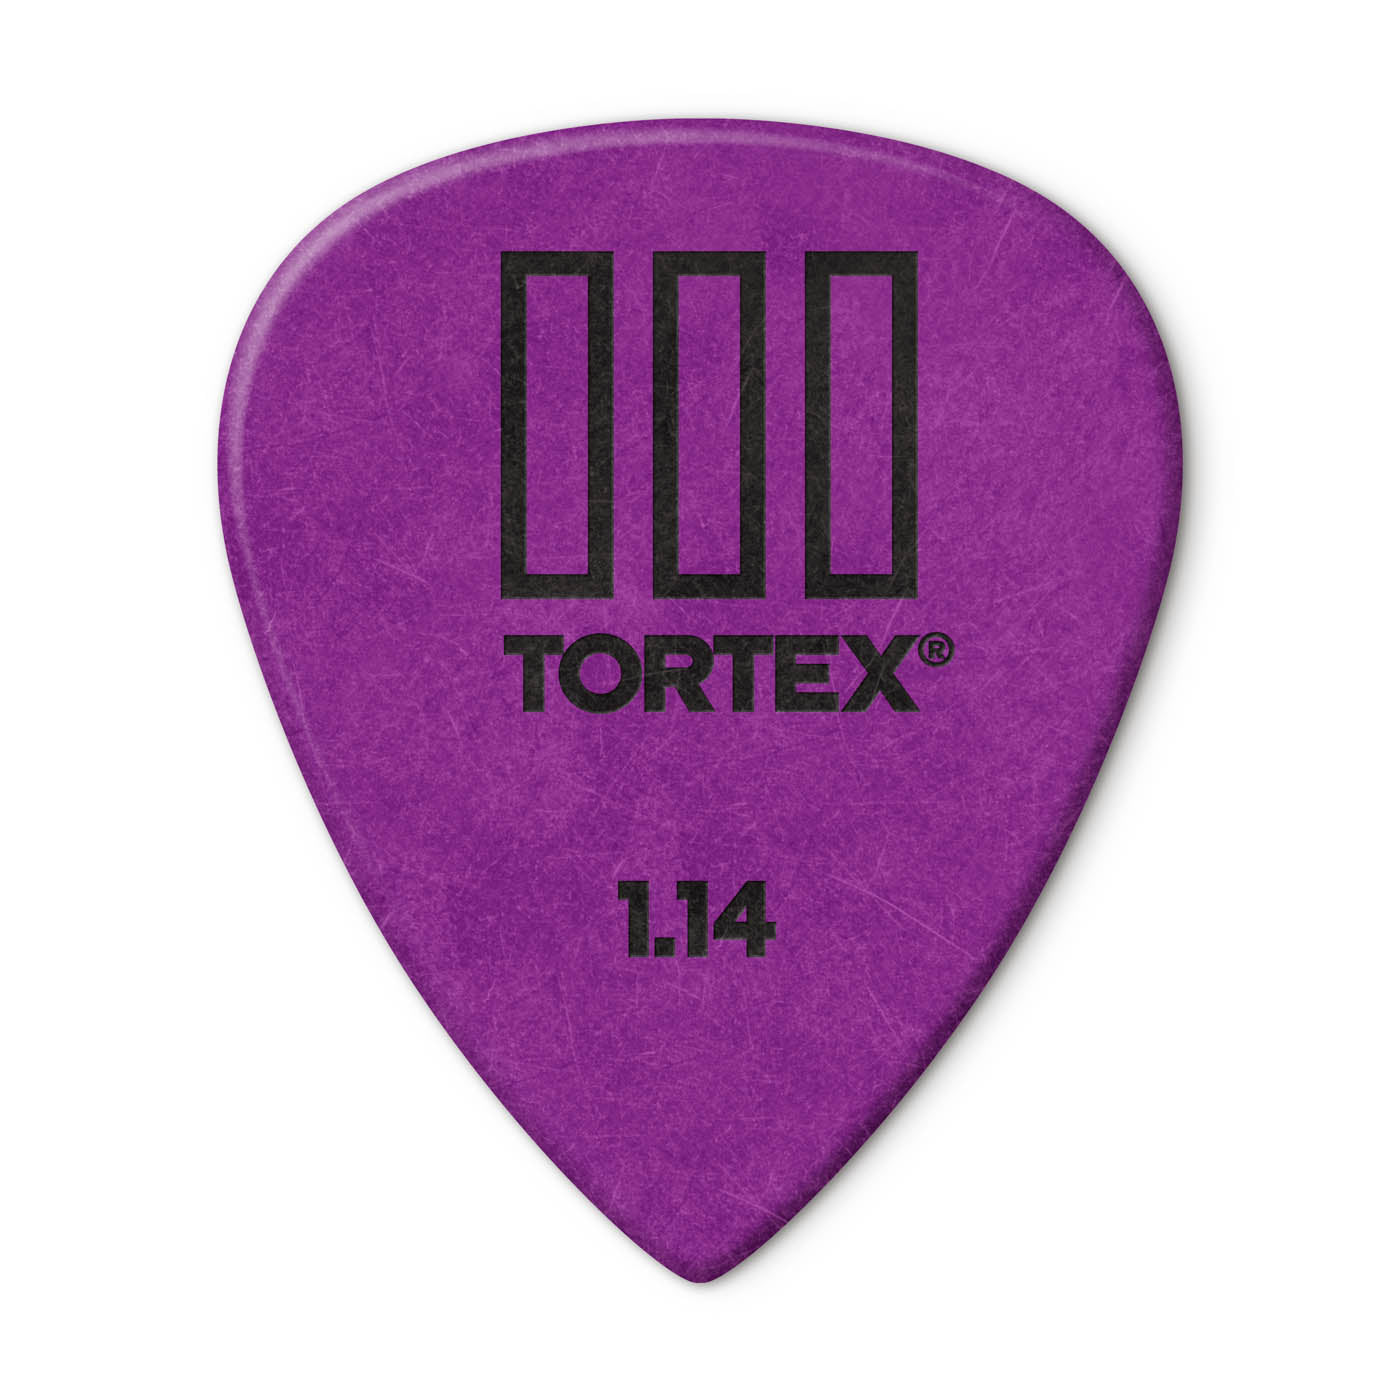 Dunlop 462 TORTEX® TIII PICK, 1.14MM